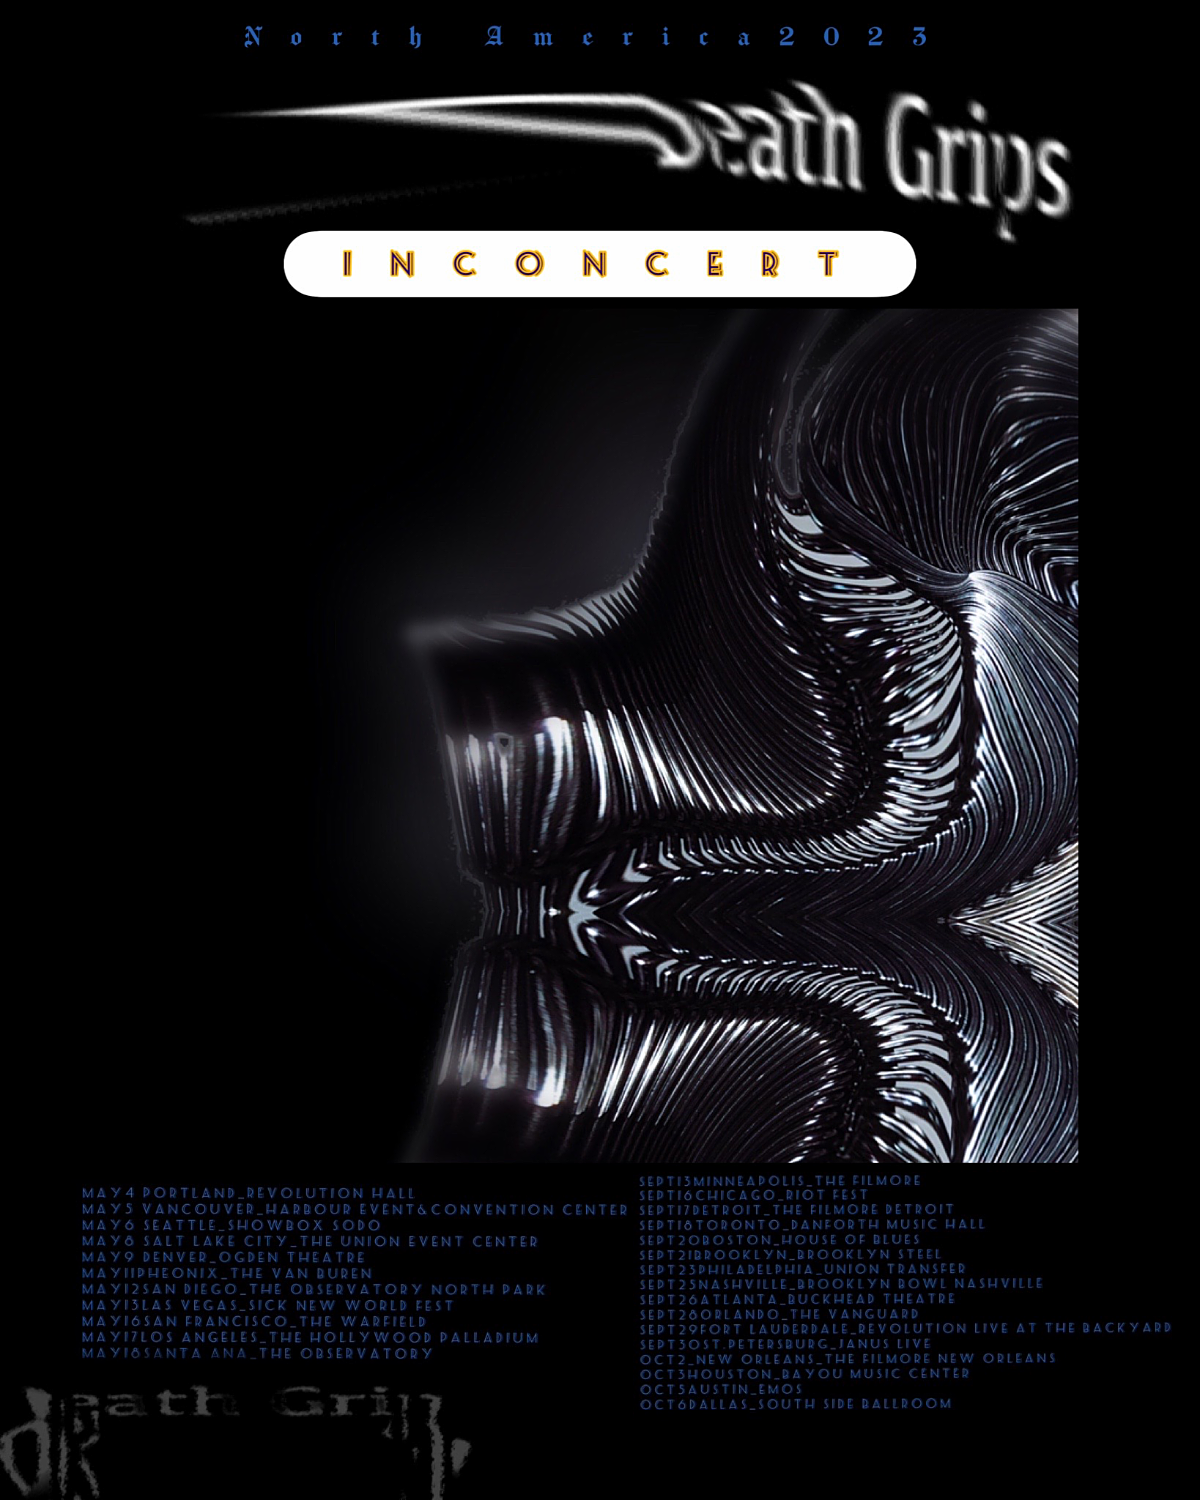 death grips tour dates